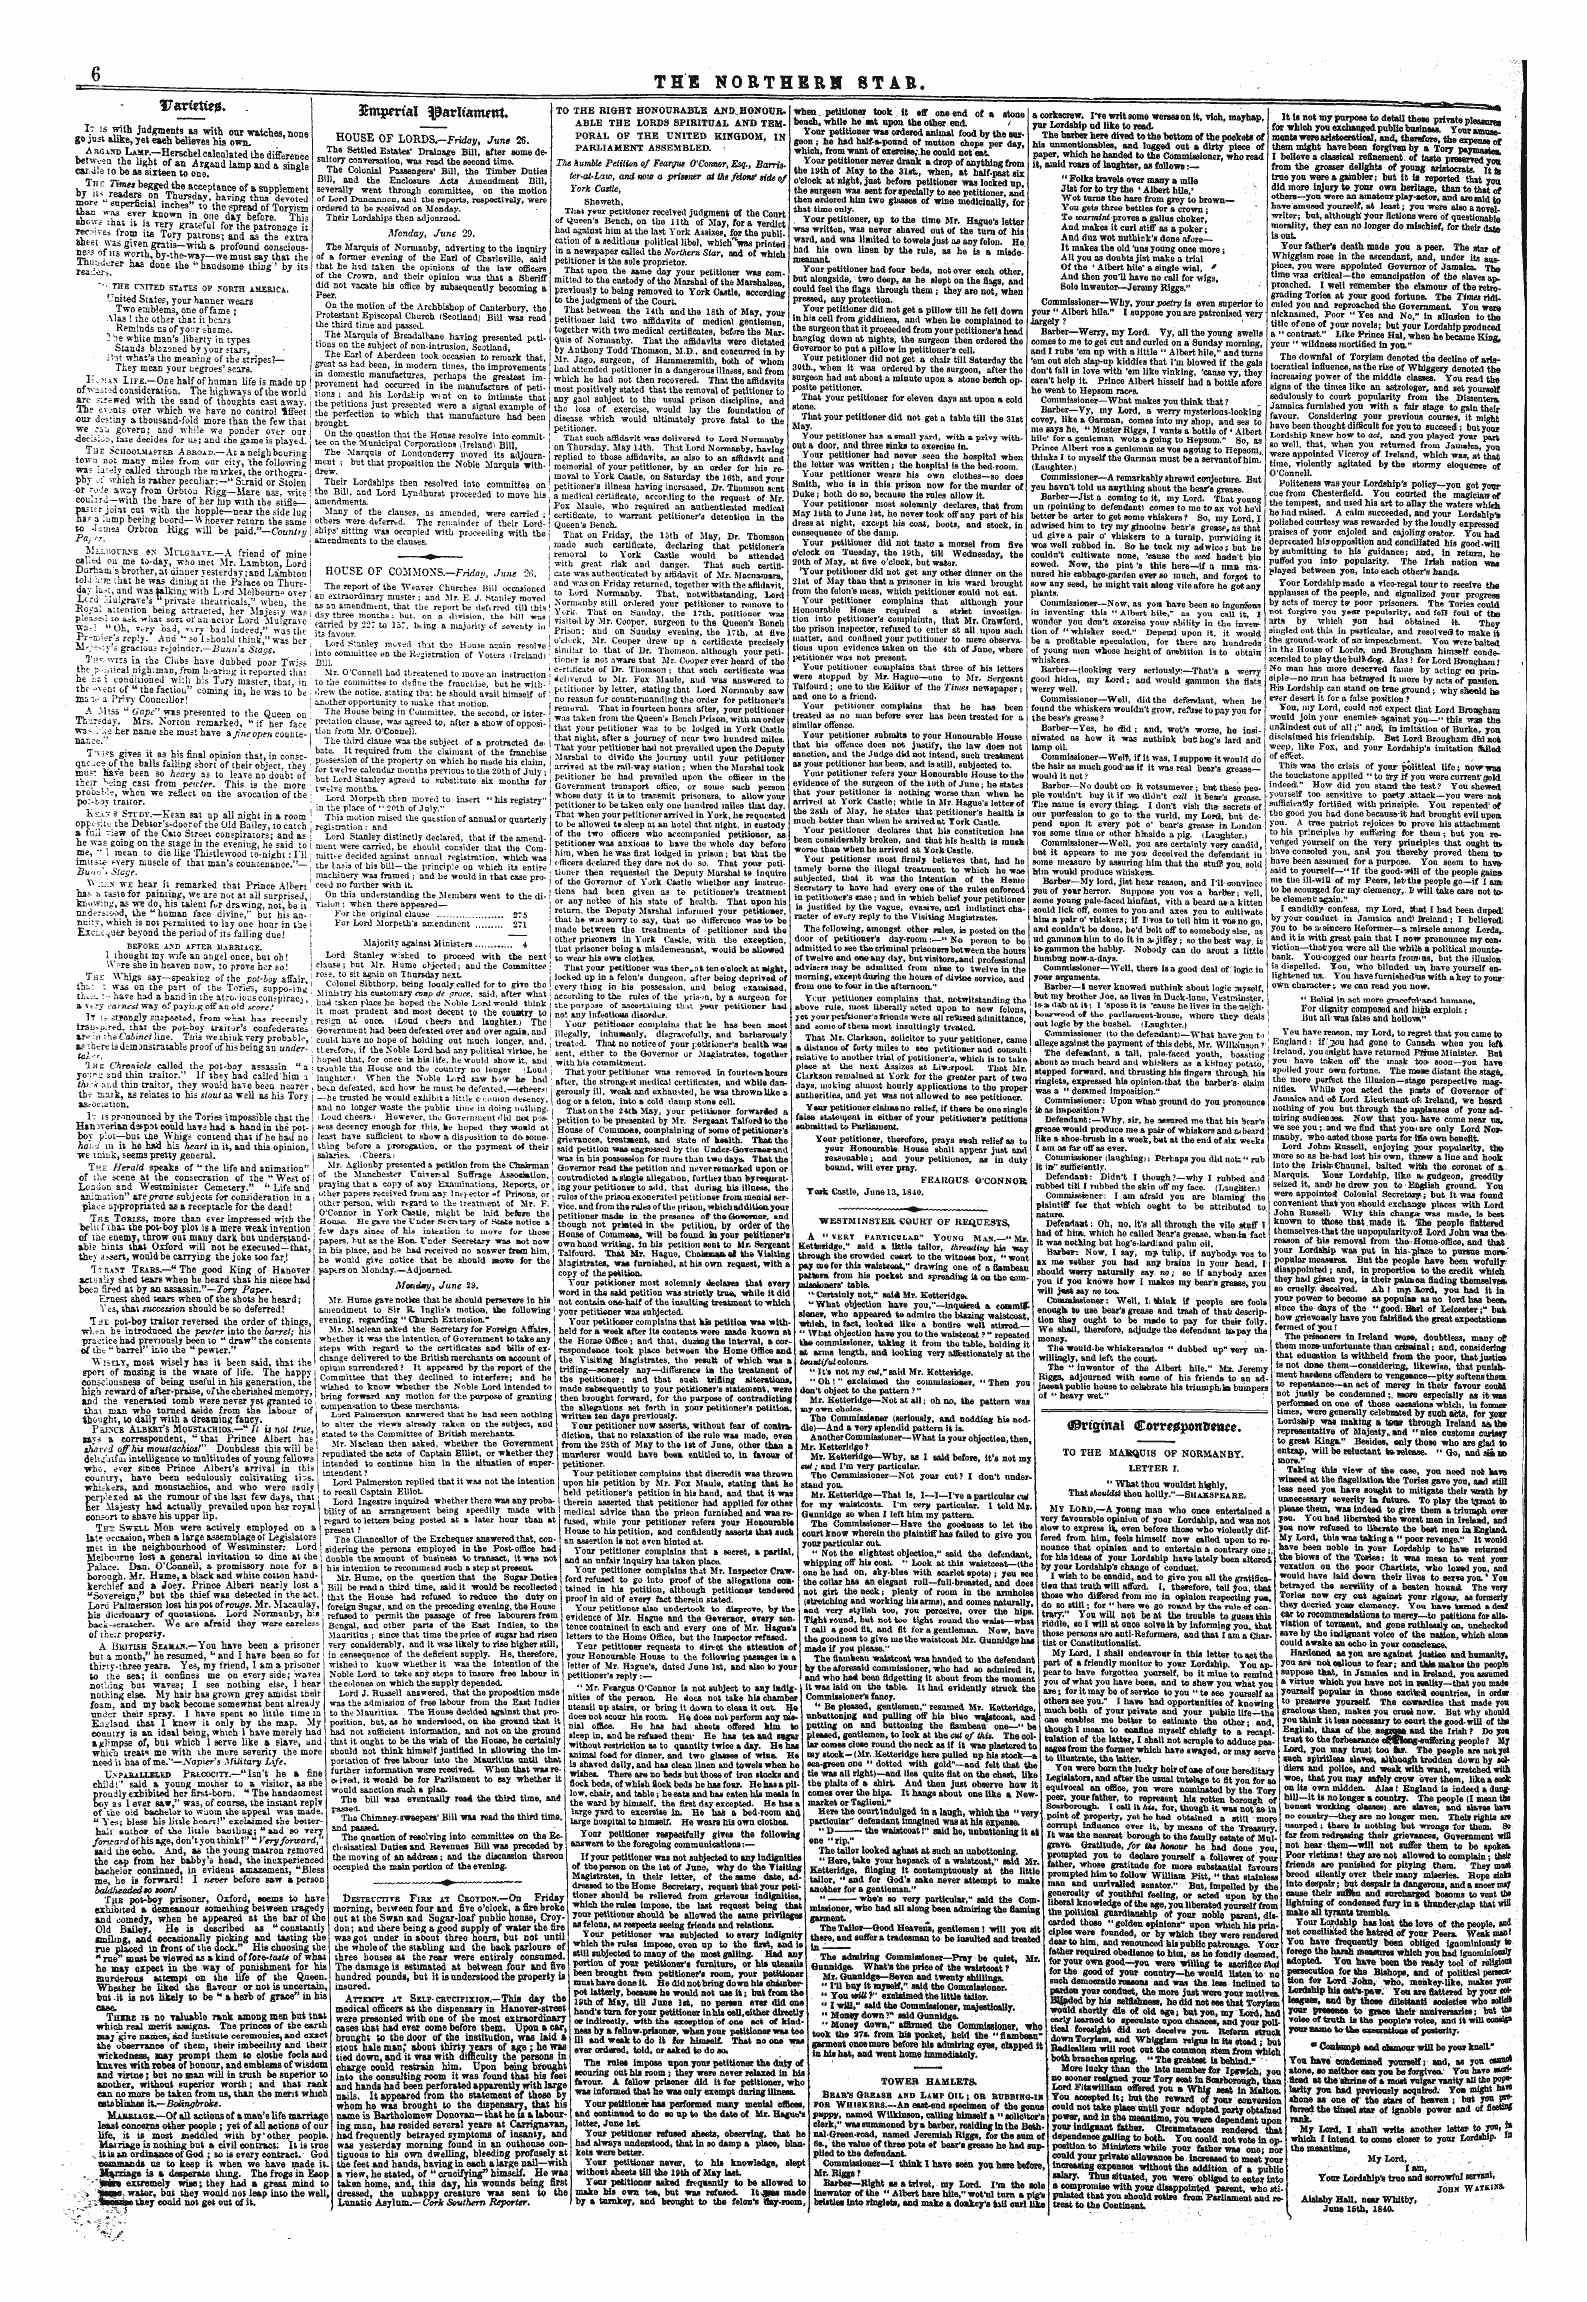 Northern Star (1837-1852): jS F Y, 1st edition - Uarietwjs. . Uarieti**.